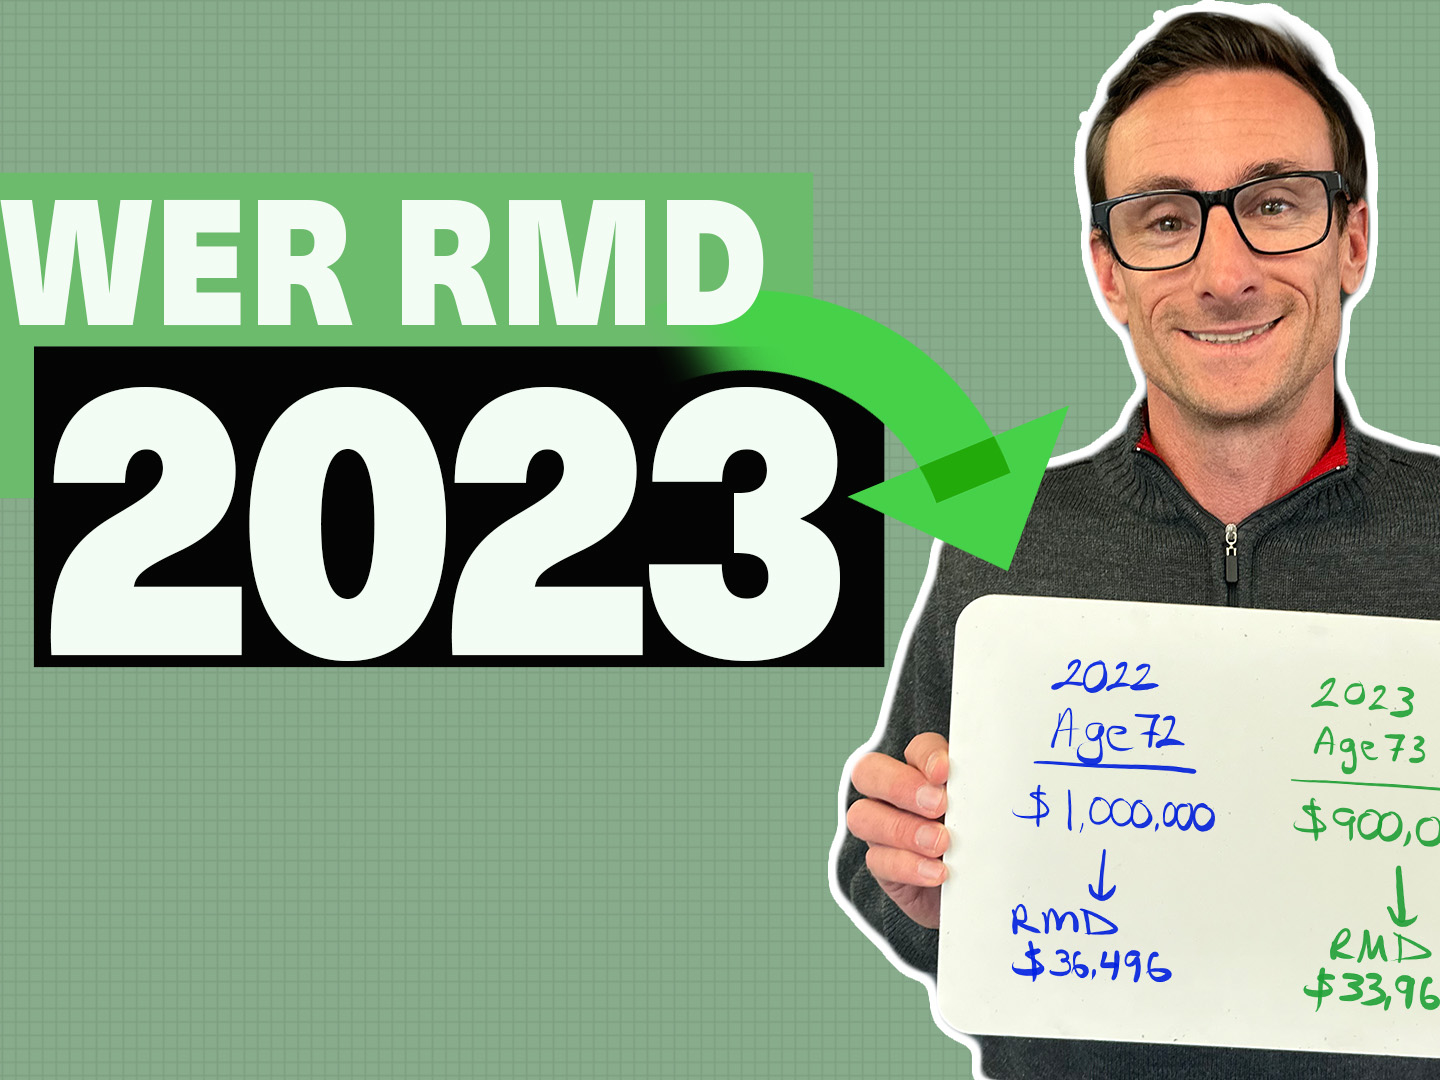 Lower RMD 2023